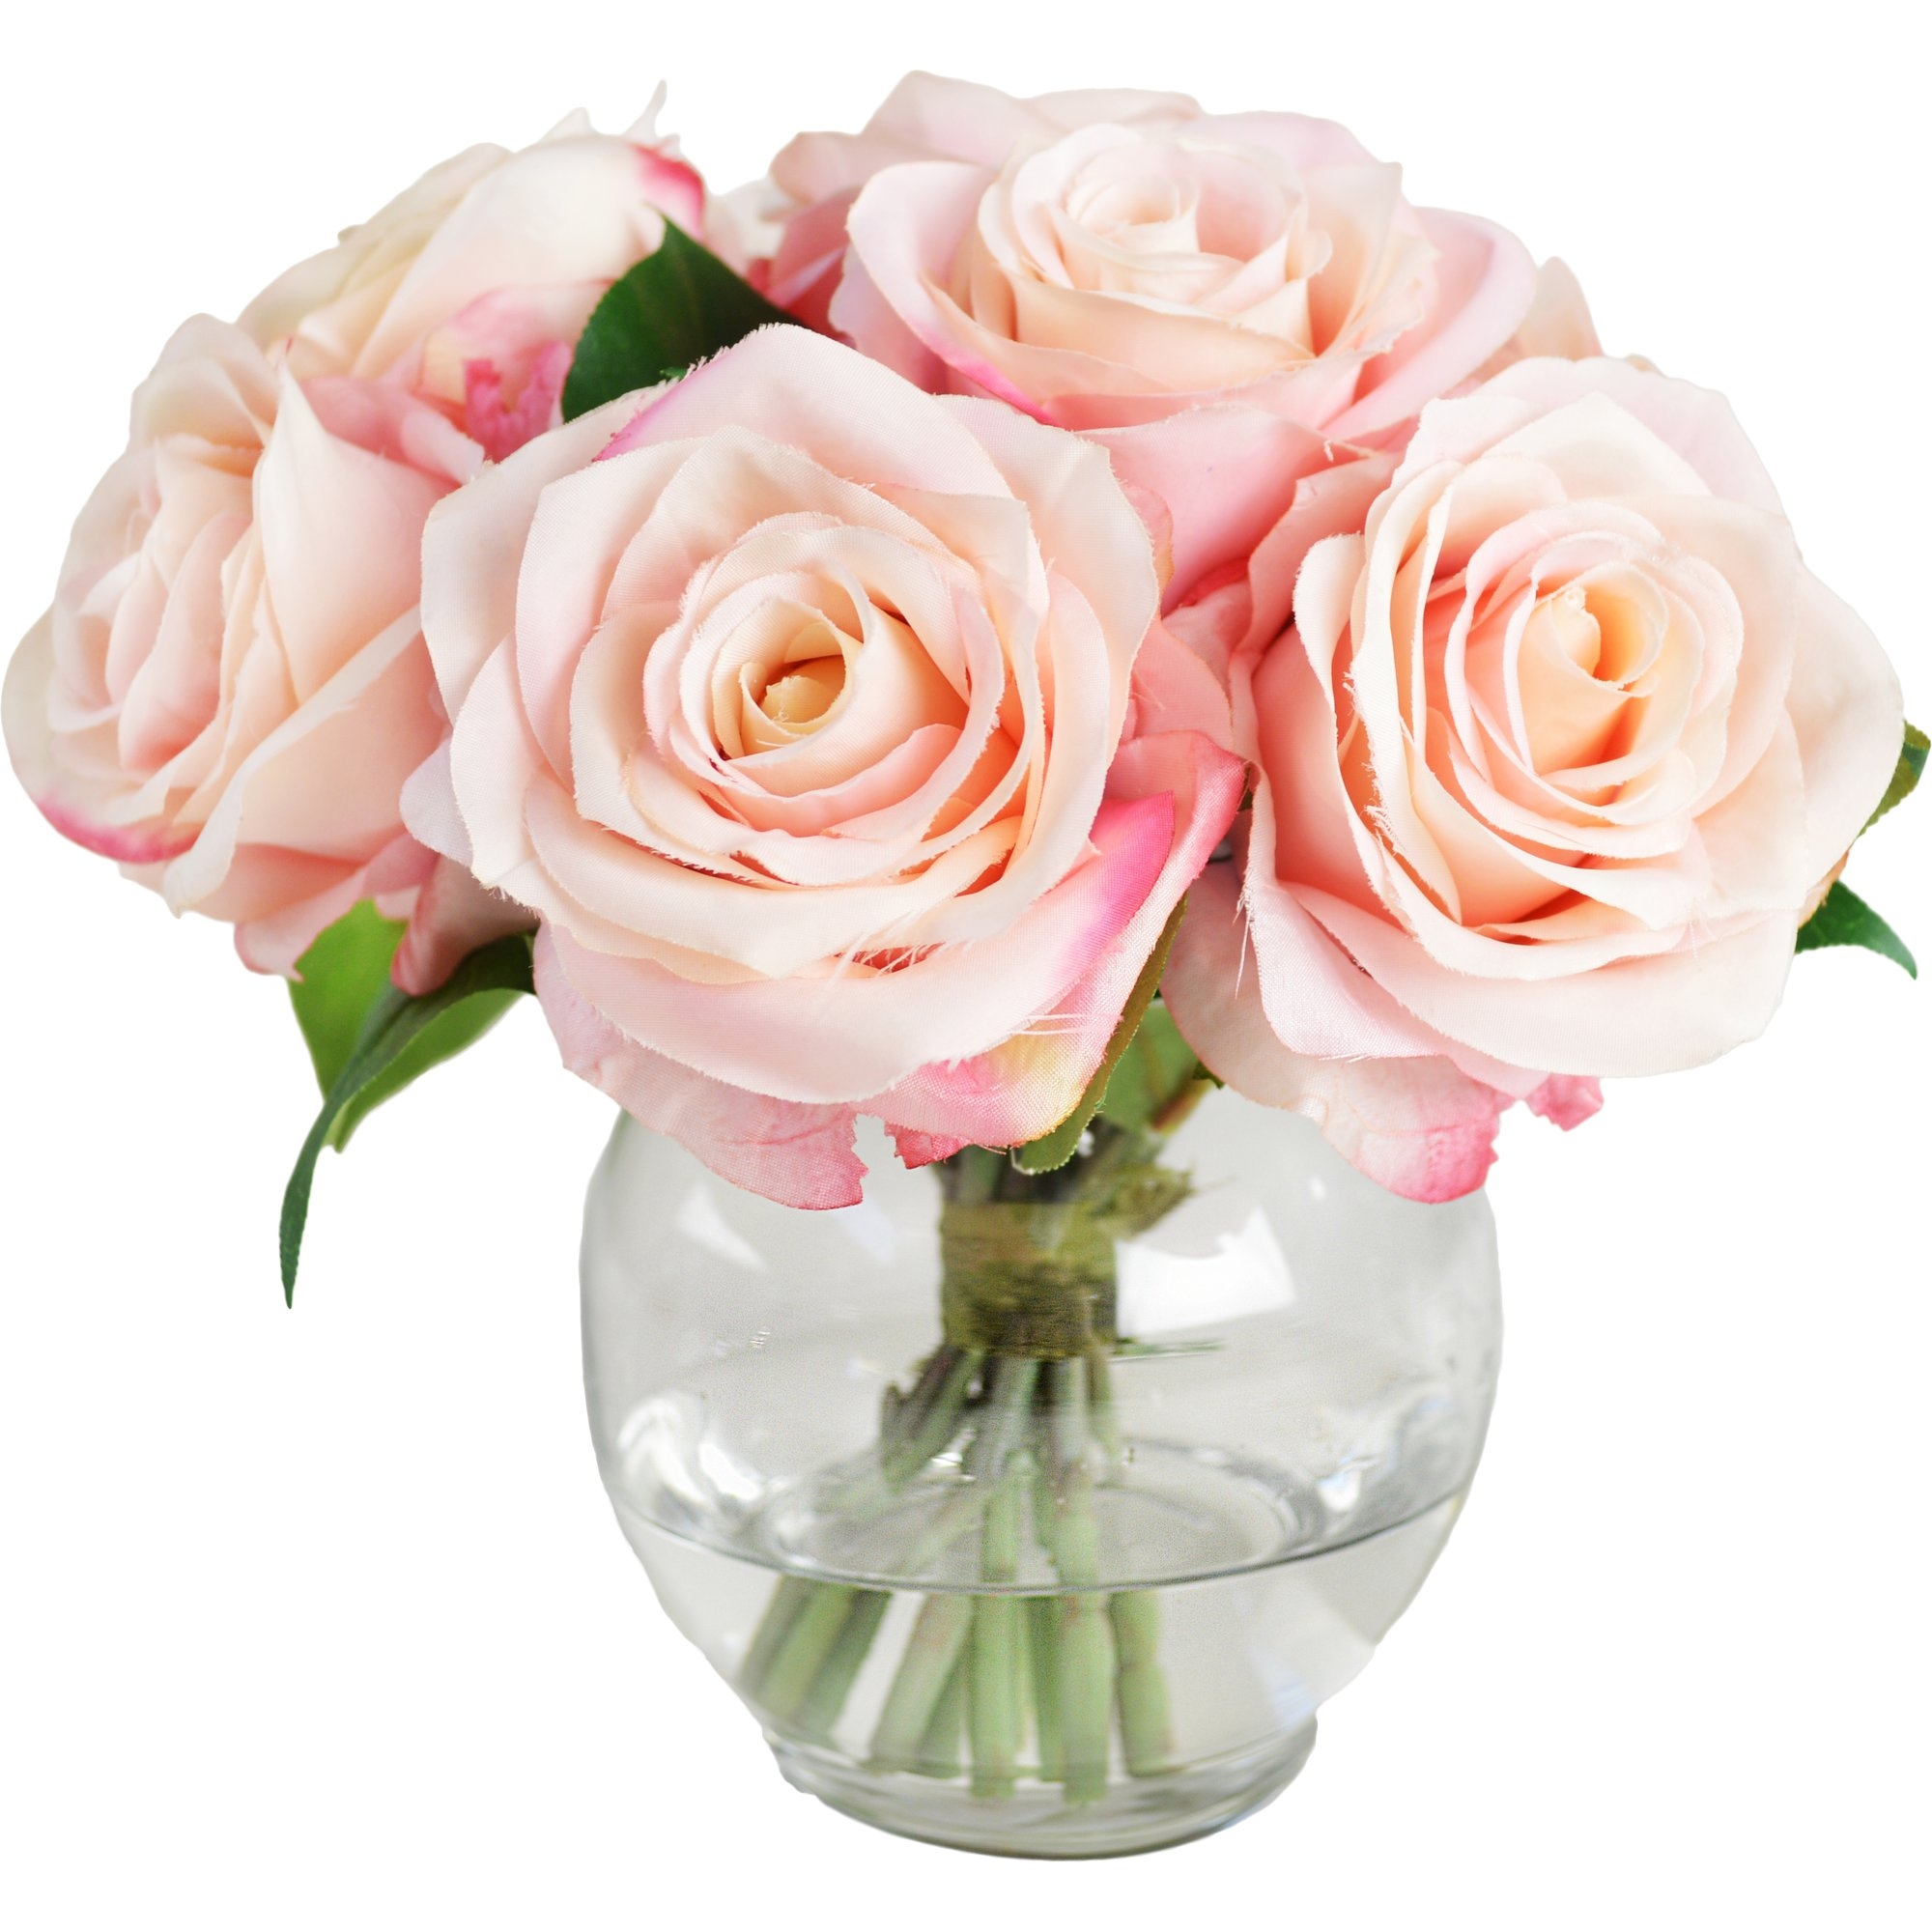 Roses in Glass Vase - Image 1